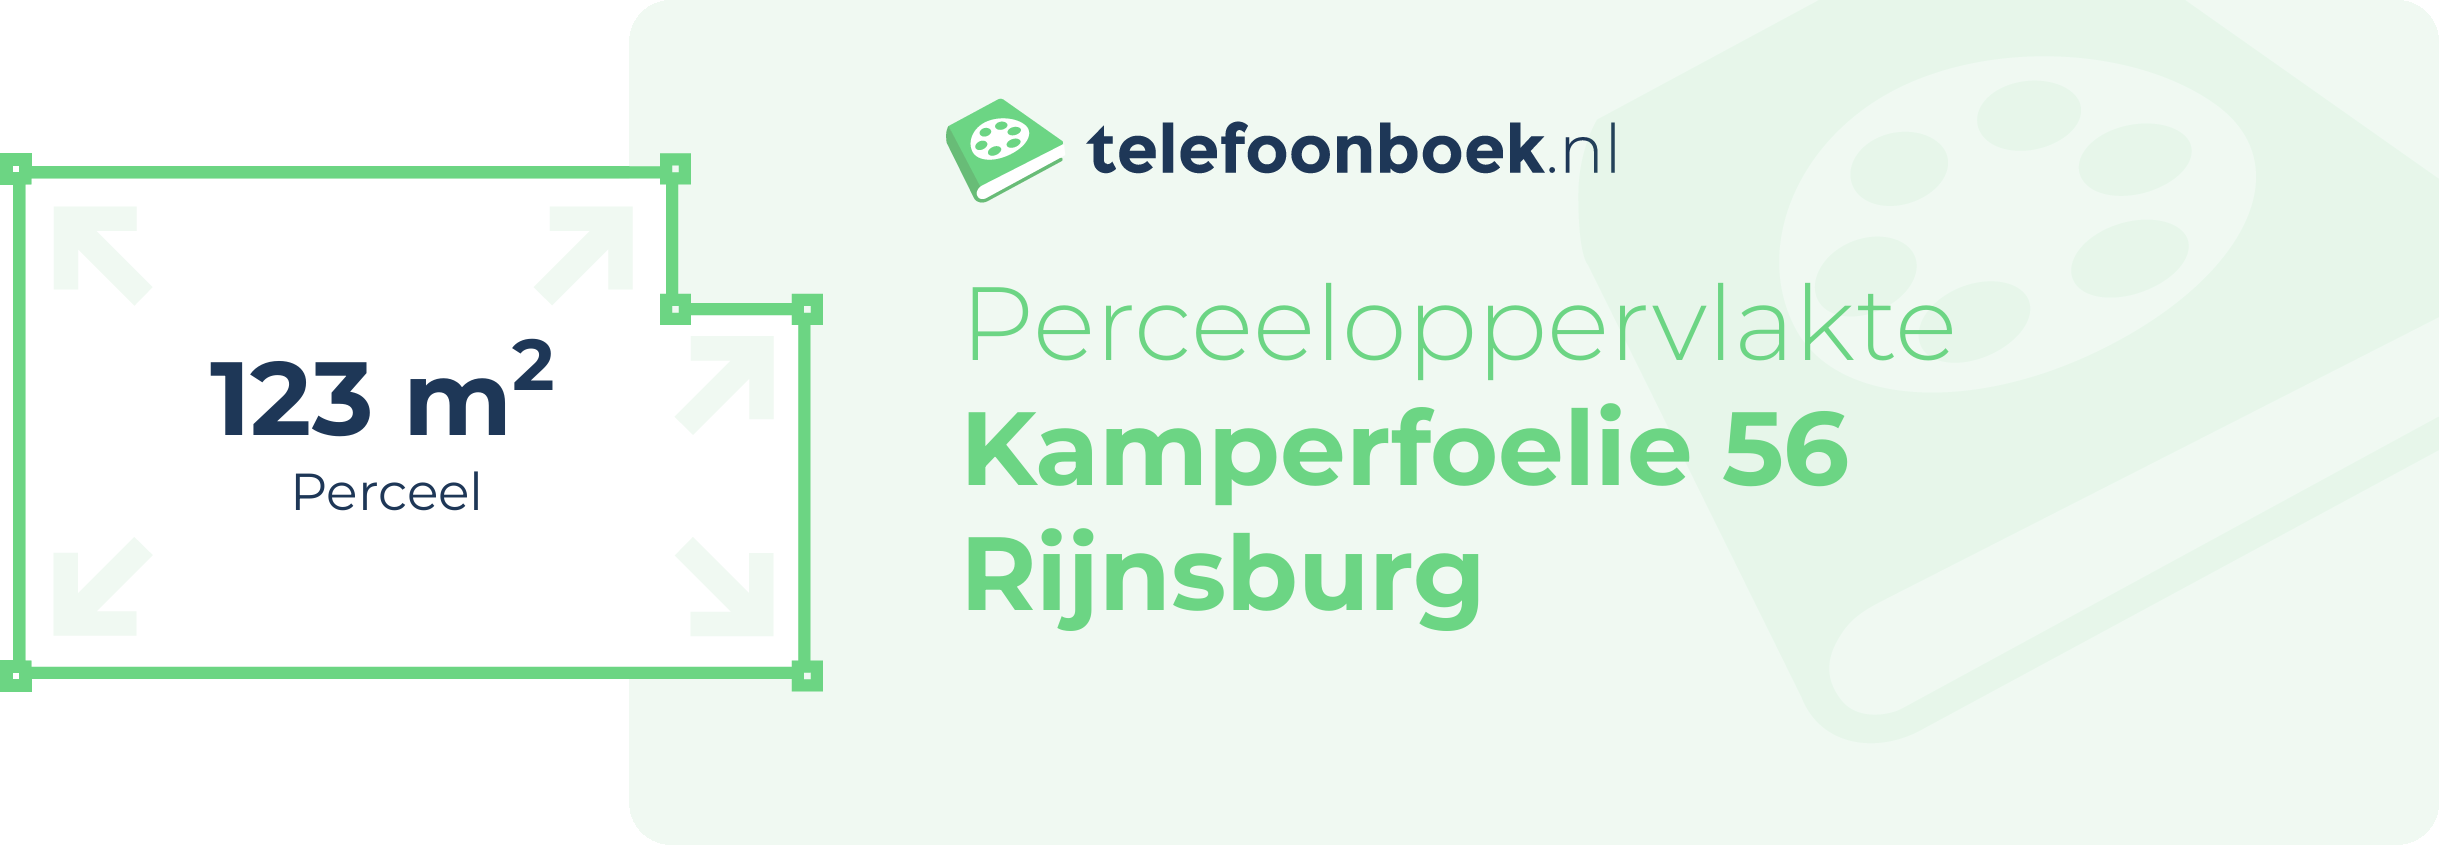 Perceeloppervlakte Kamperfoelie 56 Rijnsburg